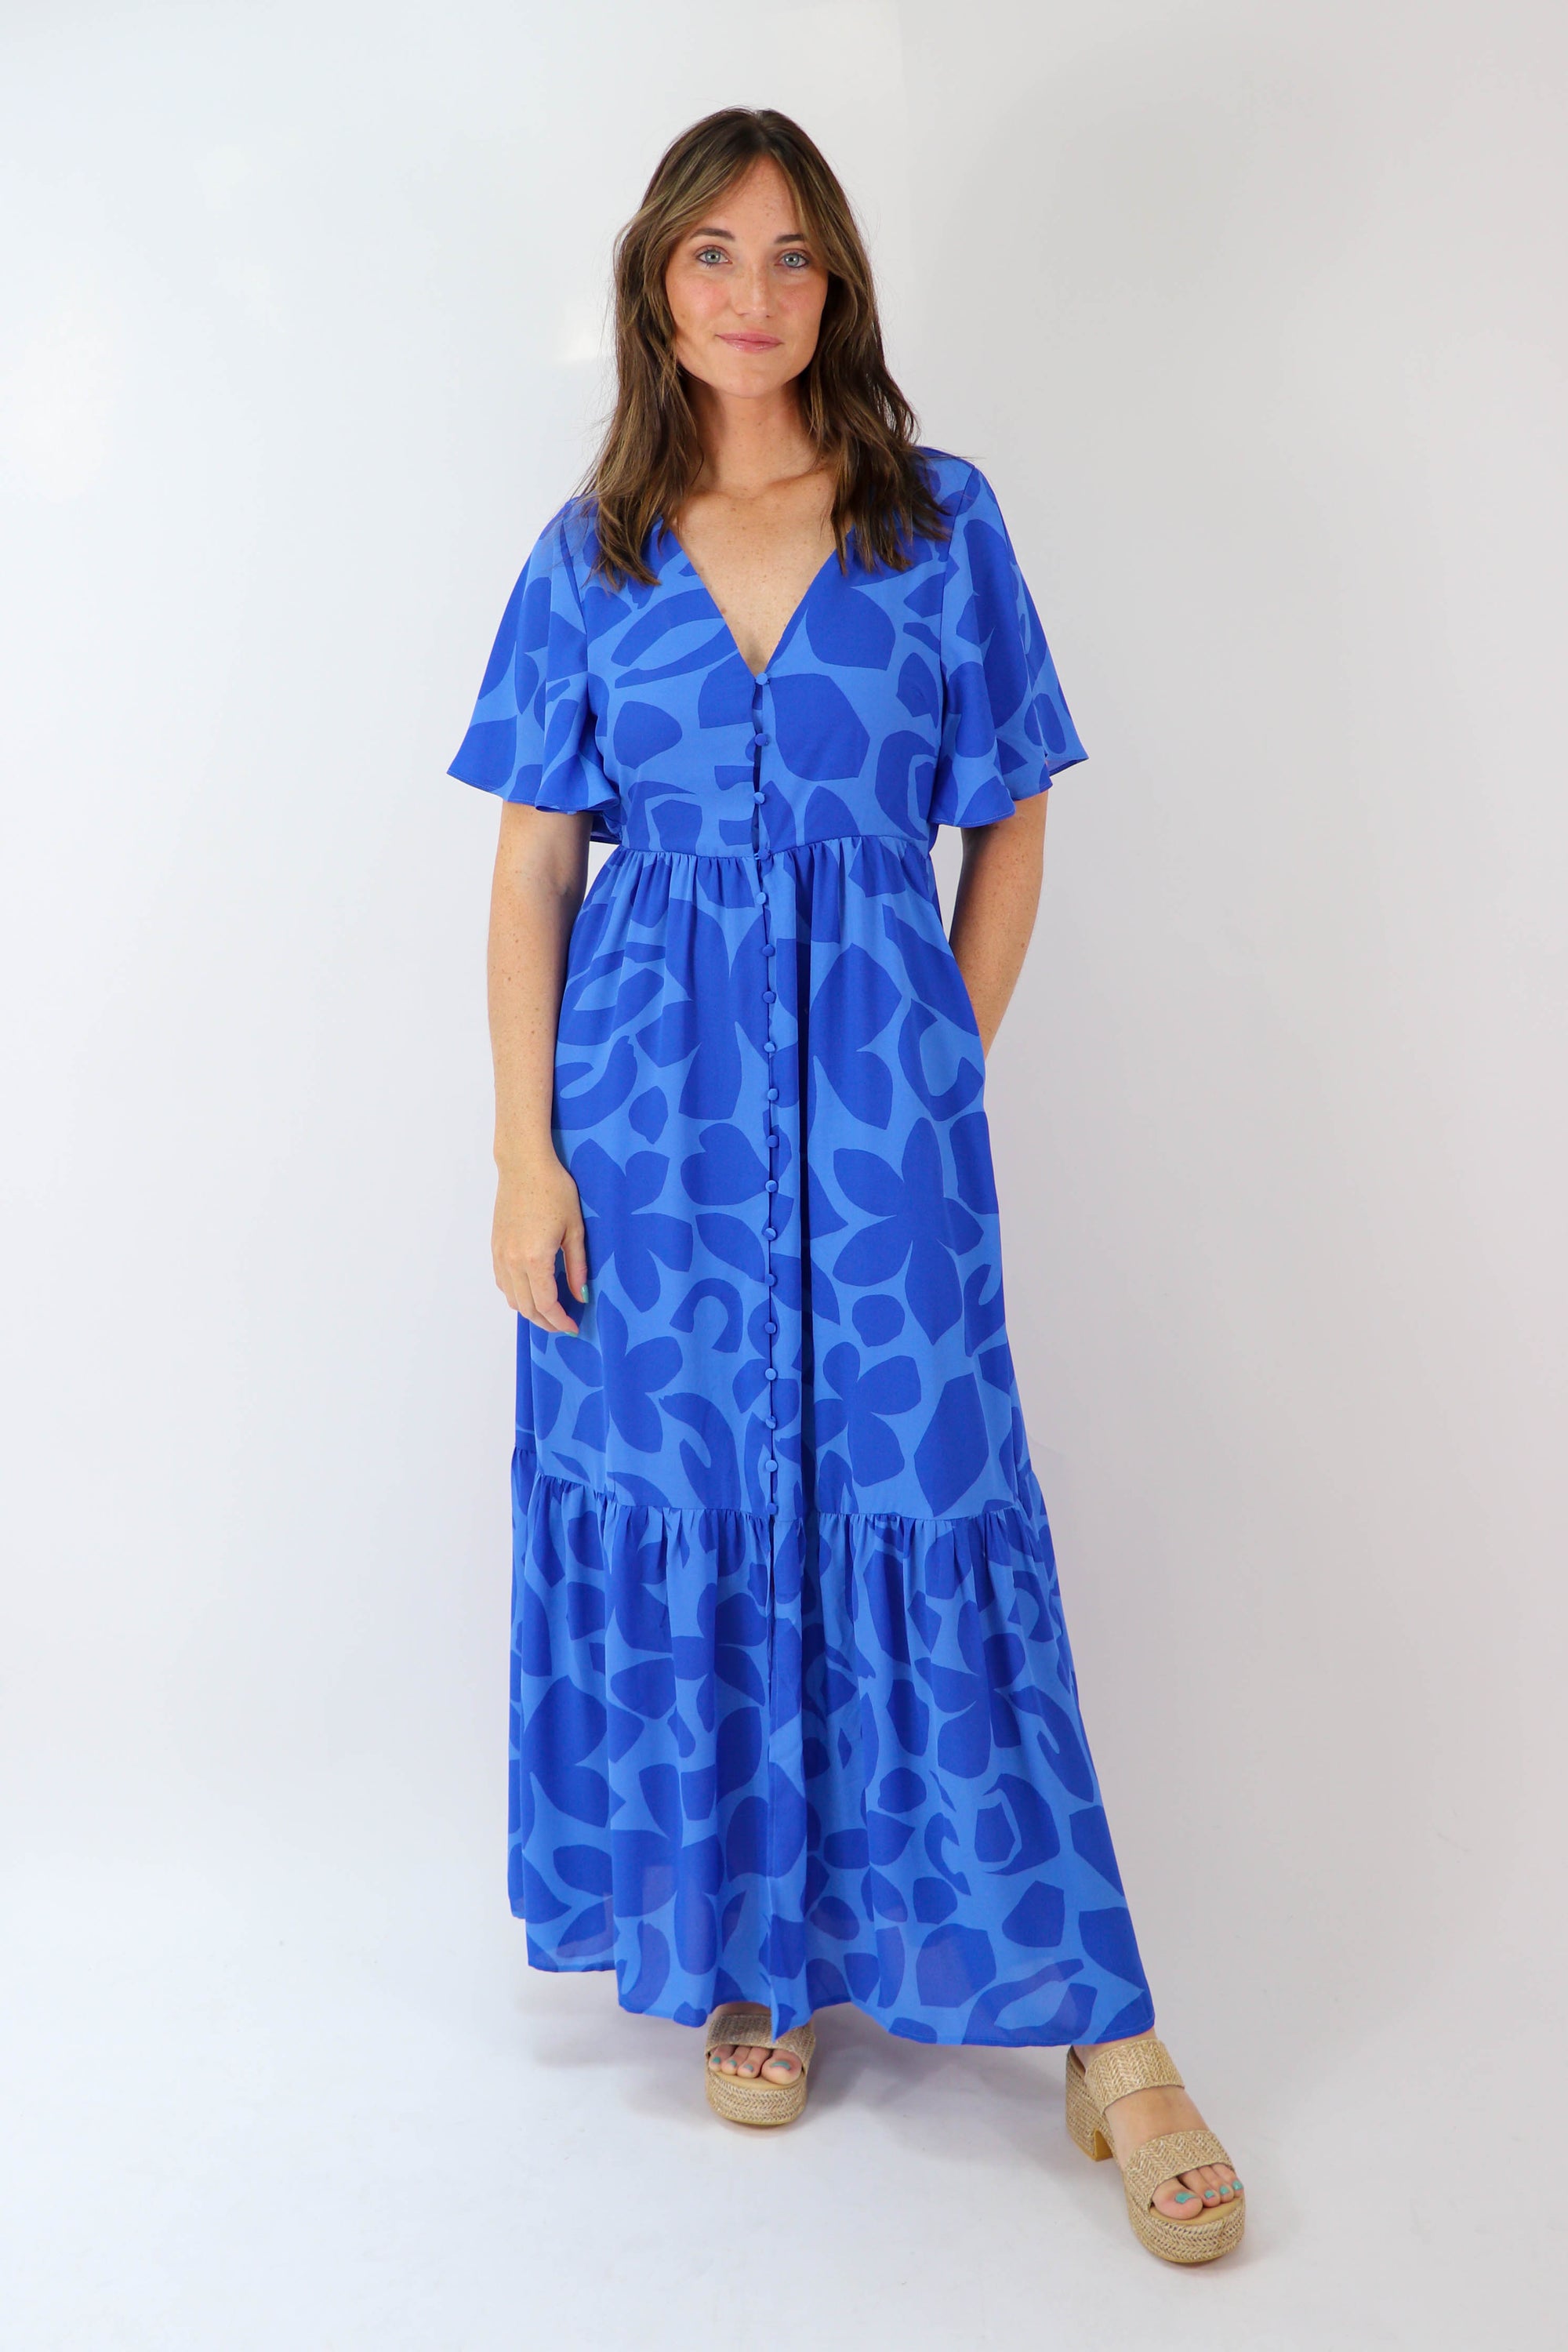 Blue Floral Maxi Dress | Sweetest Stitch Women's Online Boutique